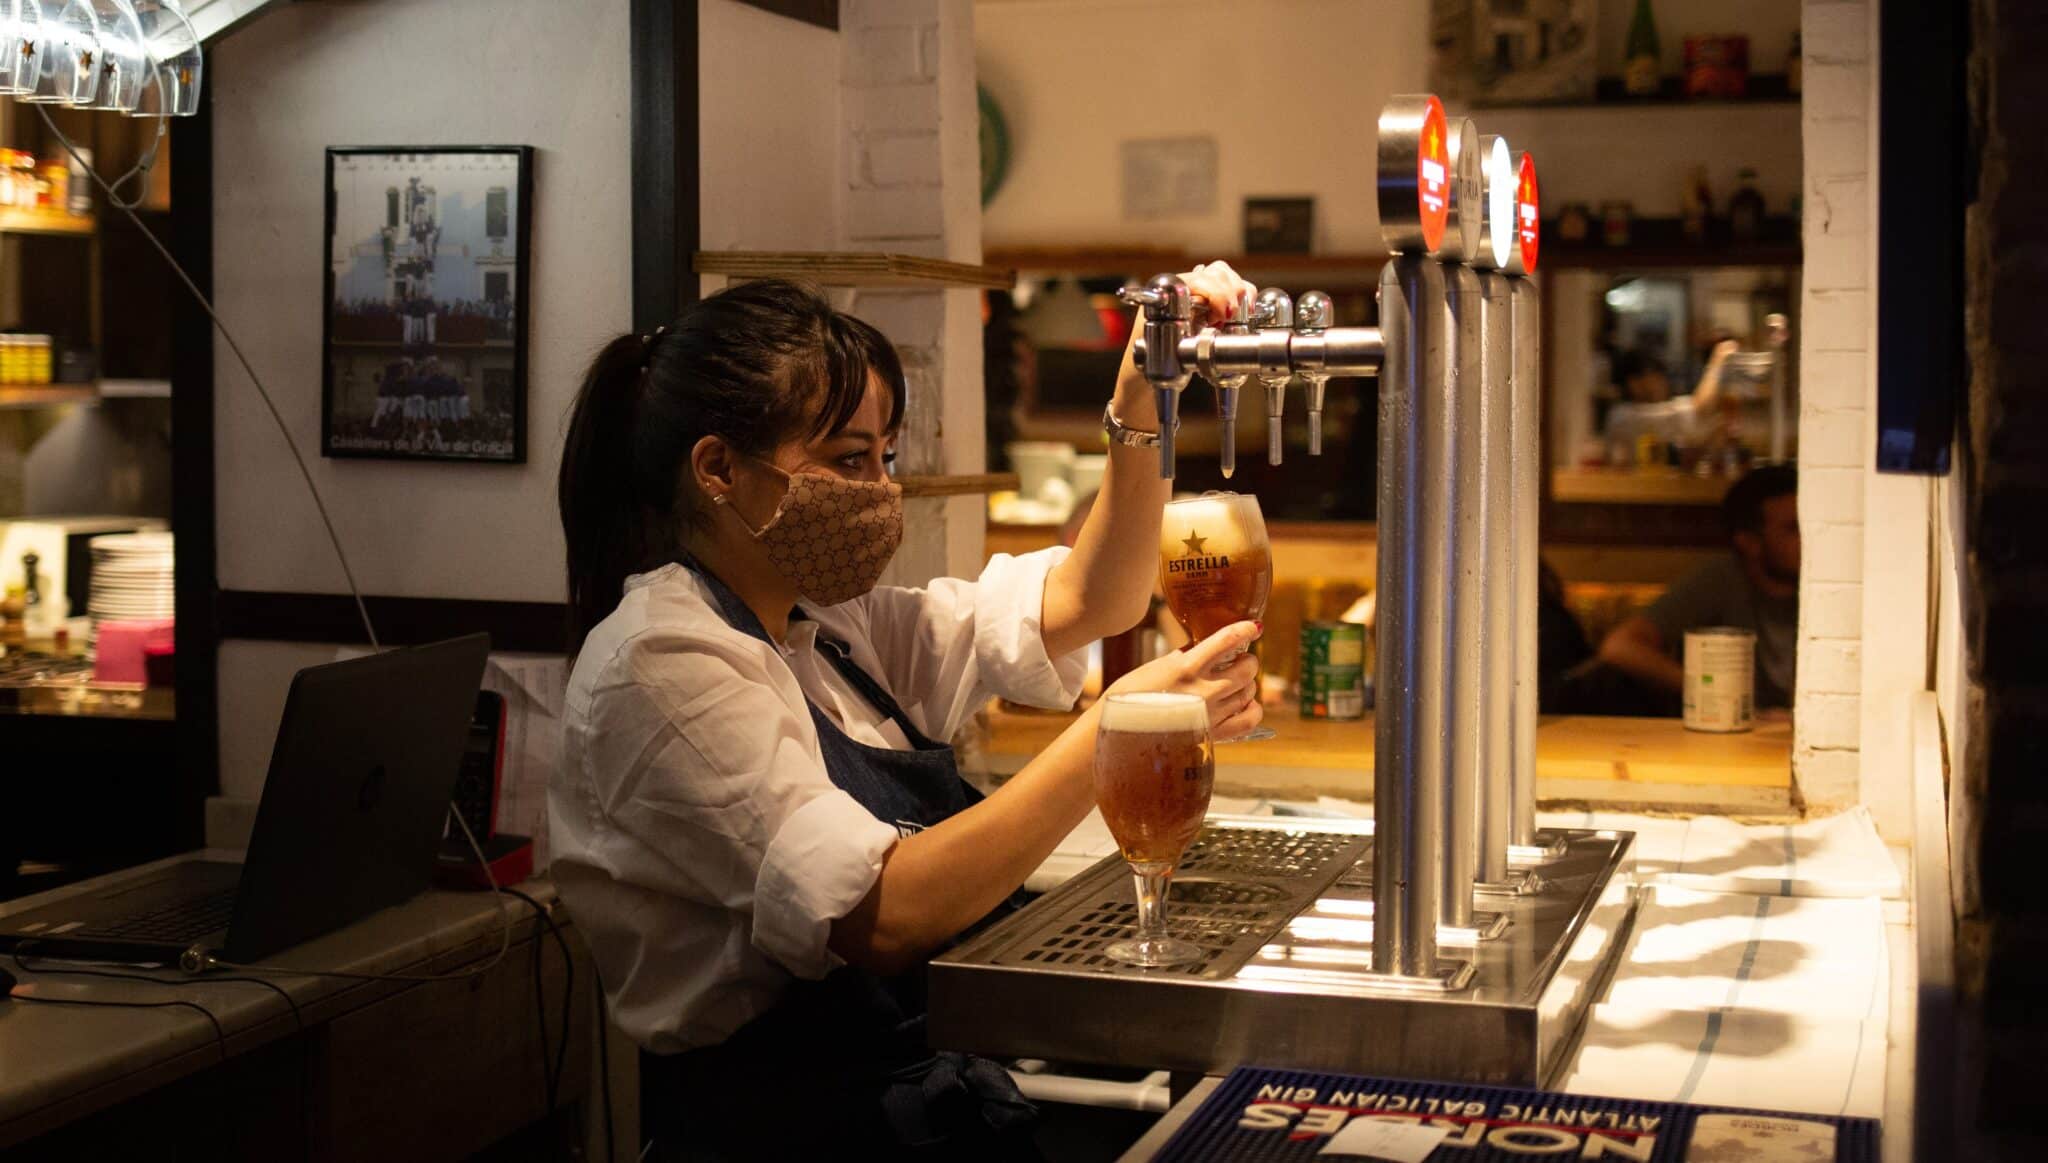 Una camarera sirve una cerveza en el interior de un bar en una calle céntrica de Barcelona.